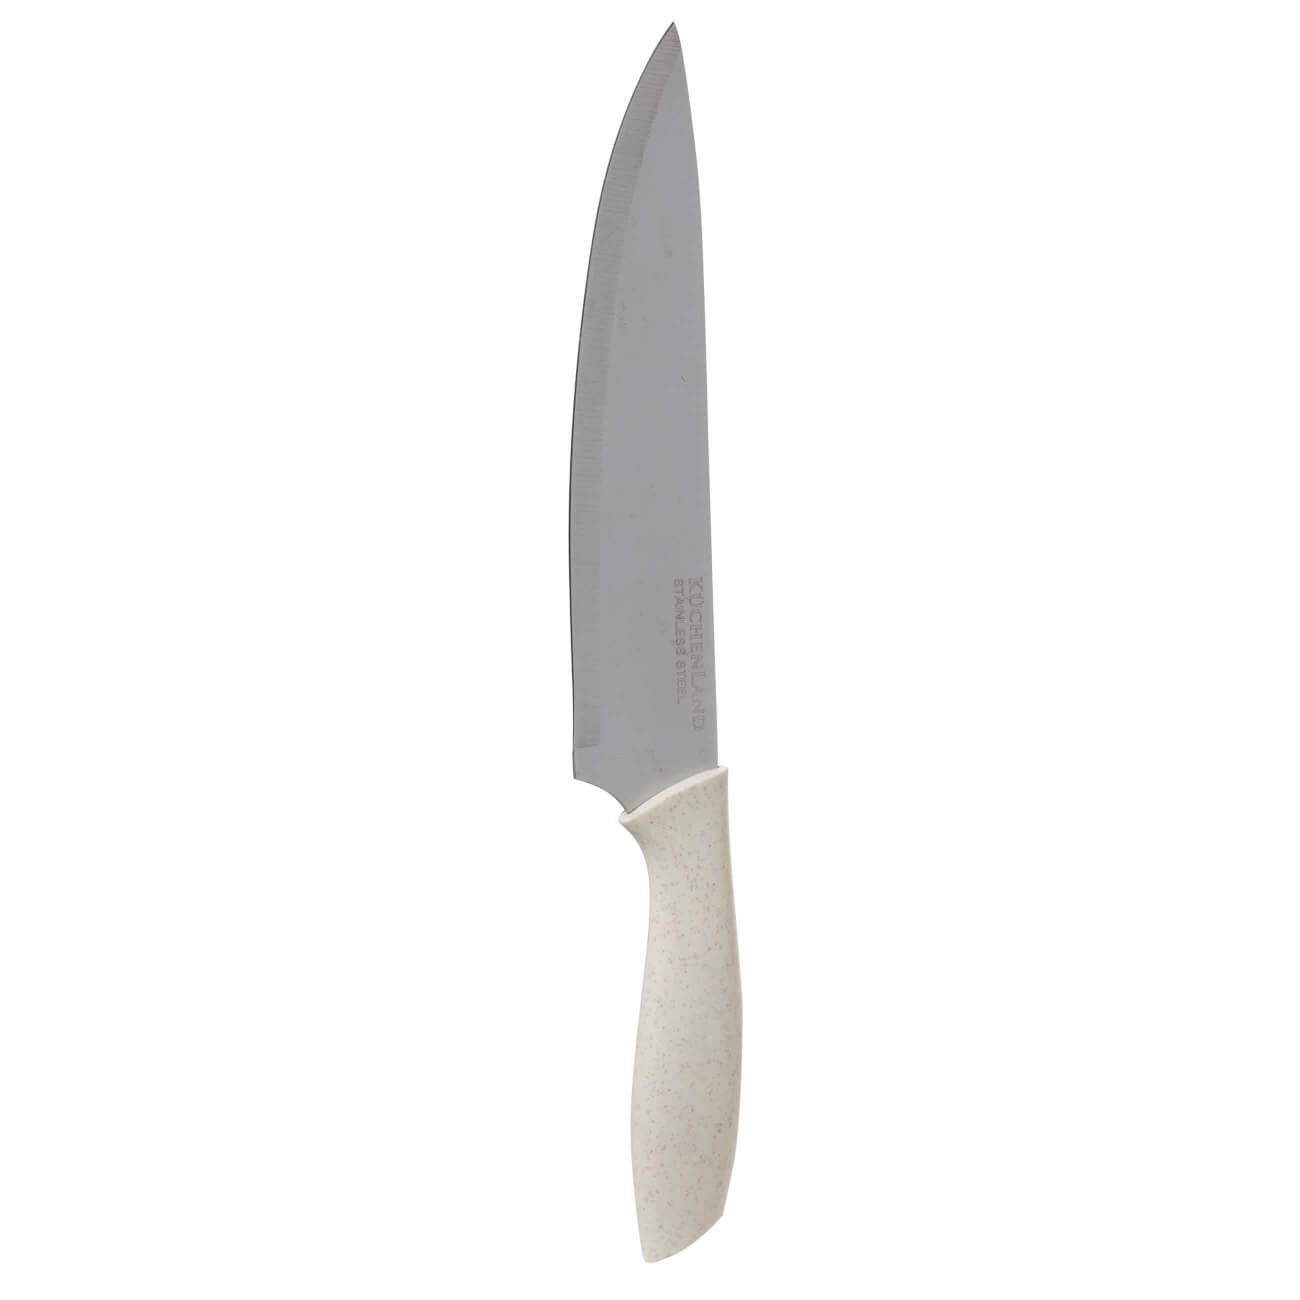 Нож поварской, 20 см, сталь/пластик, молочный, Speck-light нож для нарезки 13 см сталь пластик молочный speck light